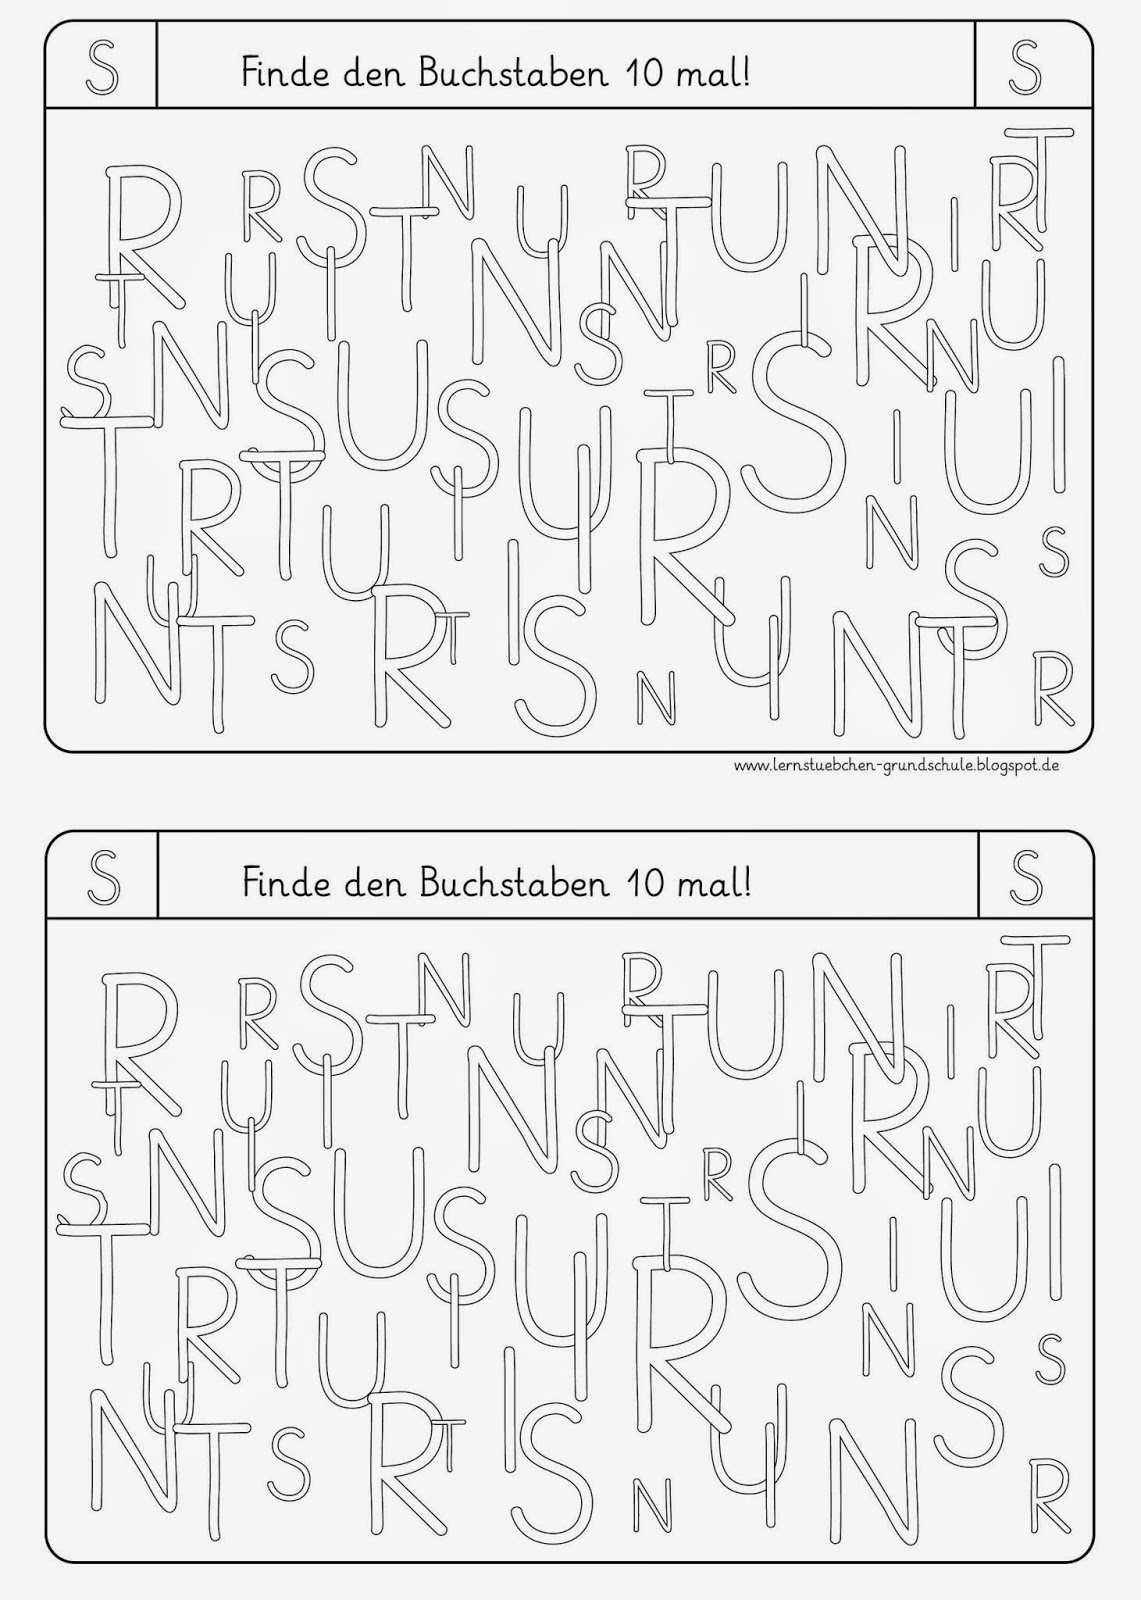 Lernstübchen: Buchstaben erkennen (U,S, R, N, I, T)